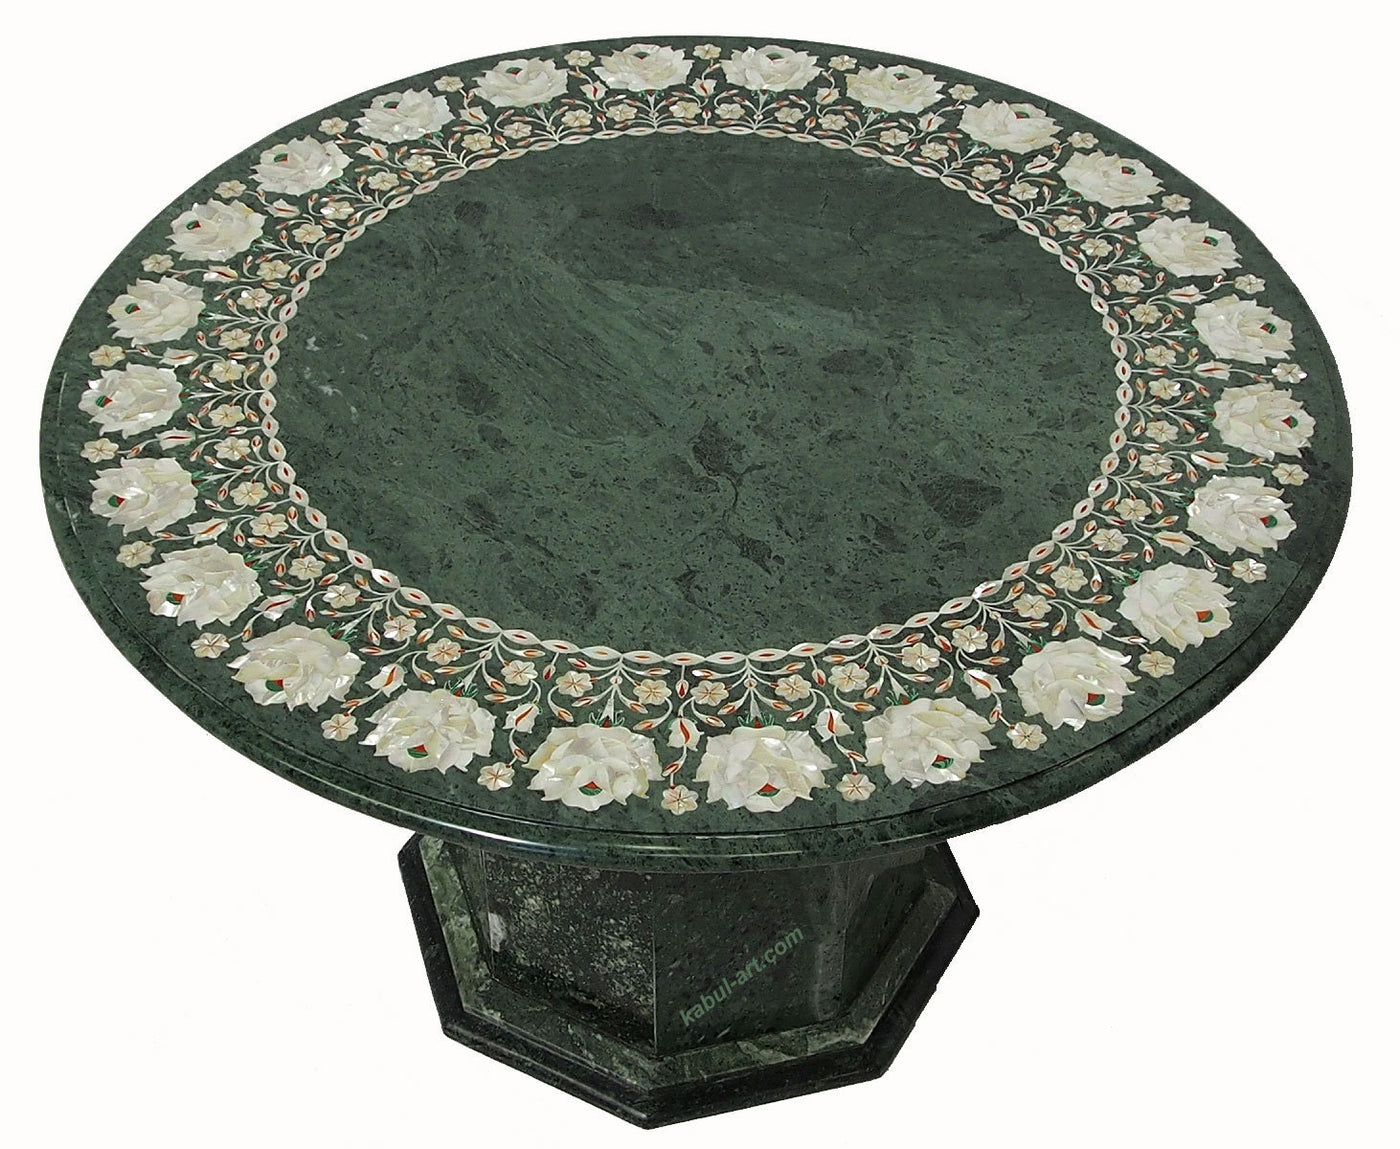 76 cm Grün Marmor  Pietra Dura Couchtisch Tisch Florentiner Mosaik Intarsienarbeit  wohnzimmertisch (Grün)  Orientsbazar   